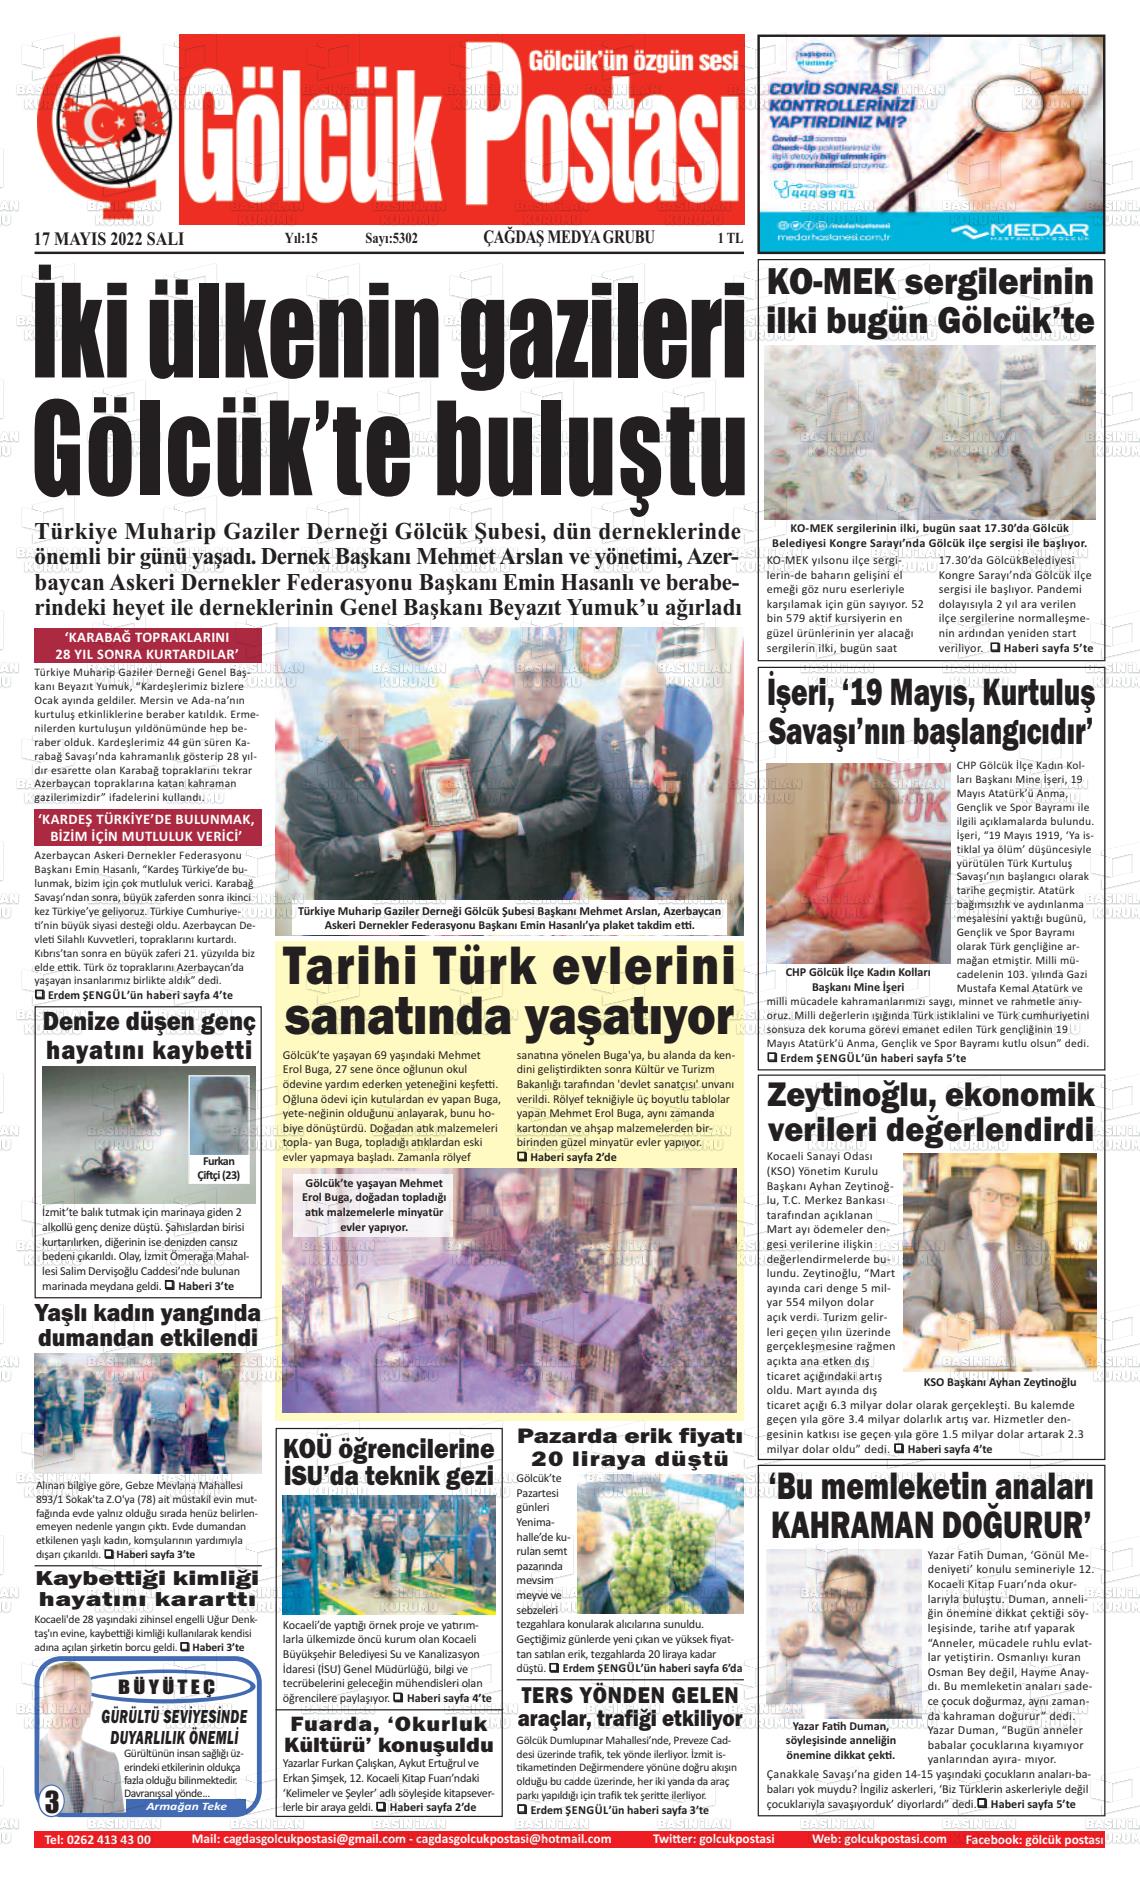 17 Mayıs 2022 Gölcük Postasi Gazete Manşeti